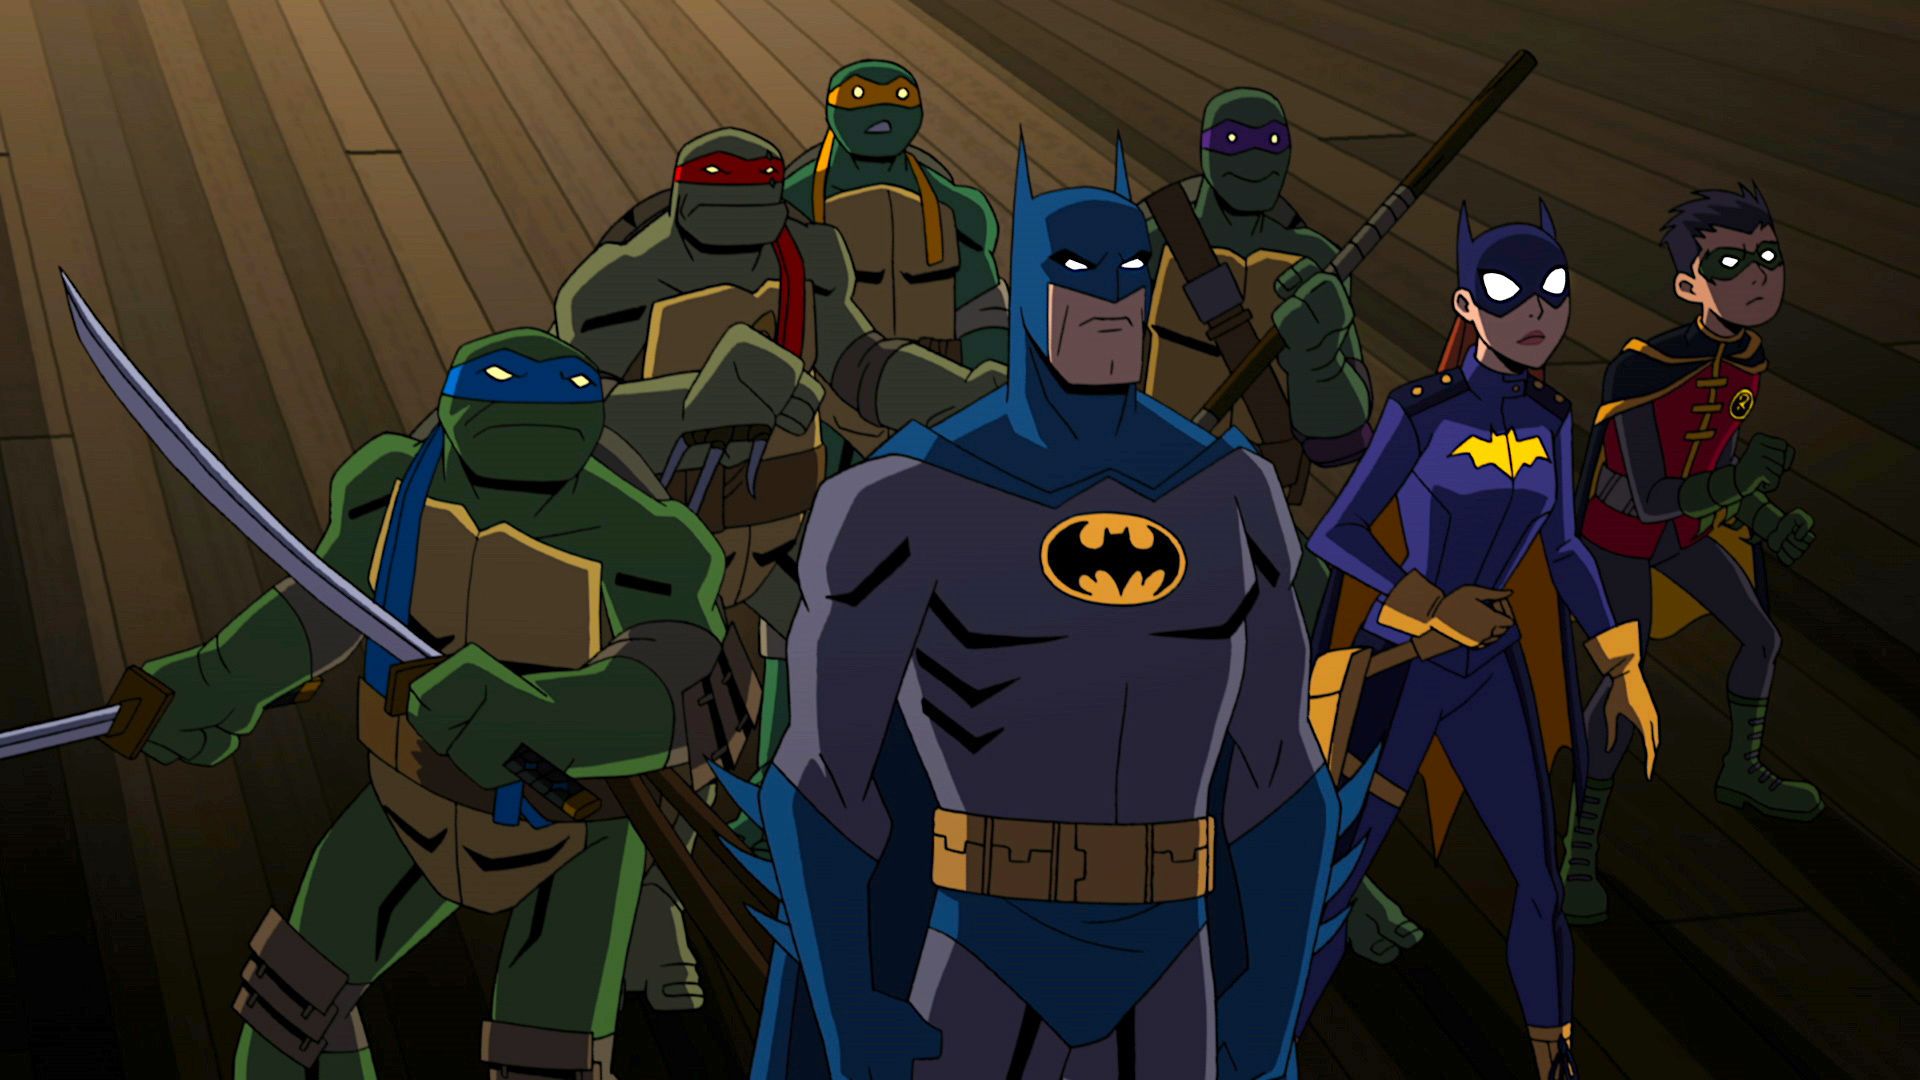 Batman vs Teenage Mutant Ninja Turtles (Video 2019)